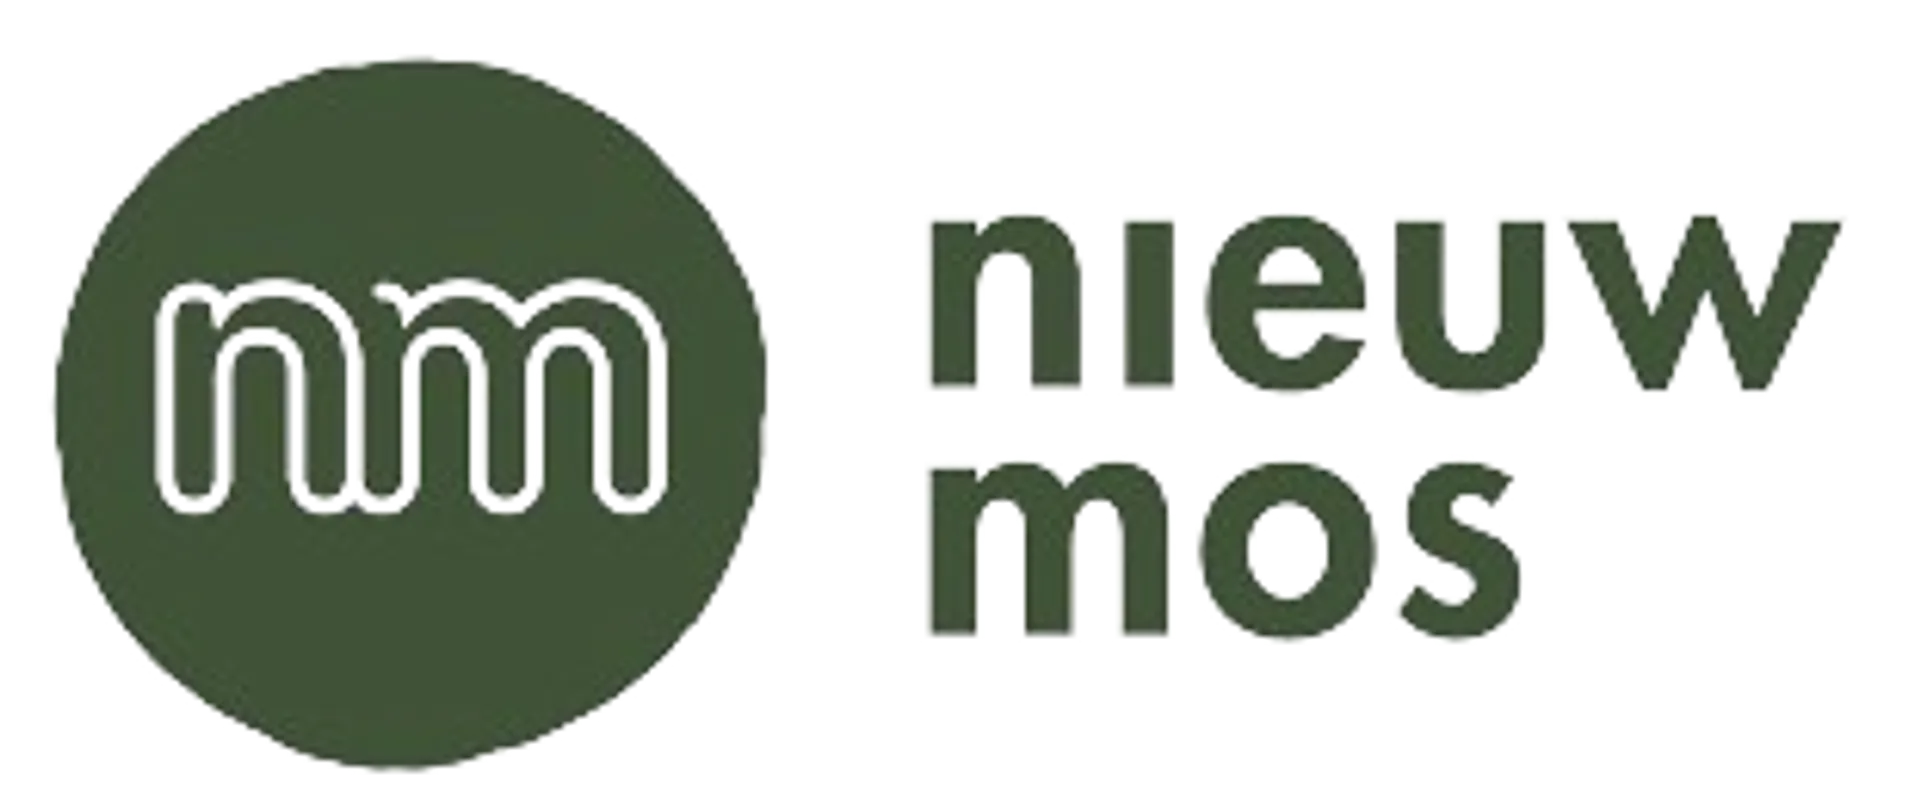 NIEUW MOS logo in de folder van deze week